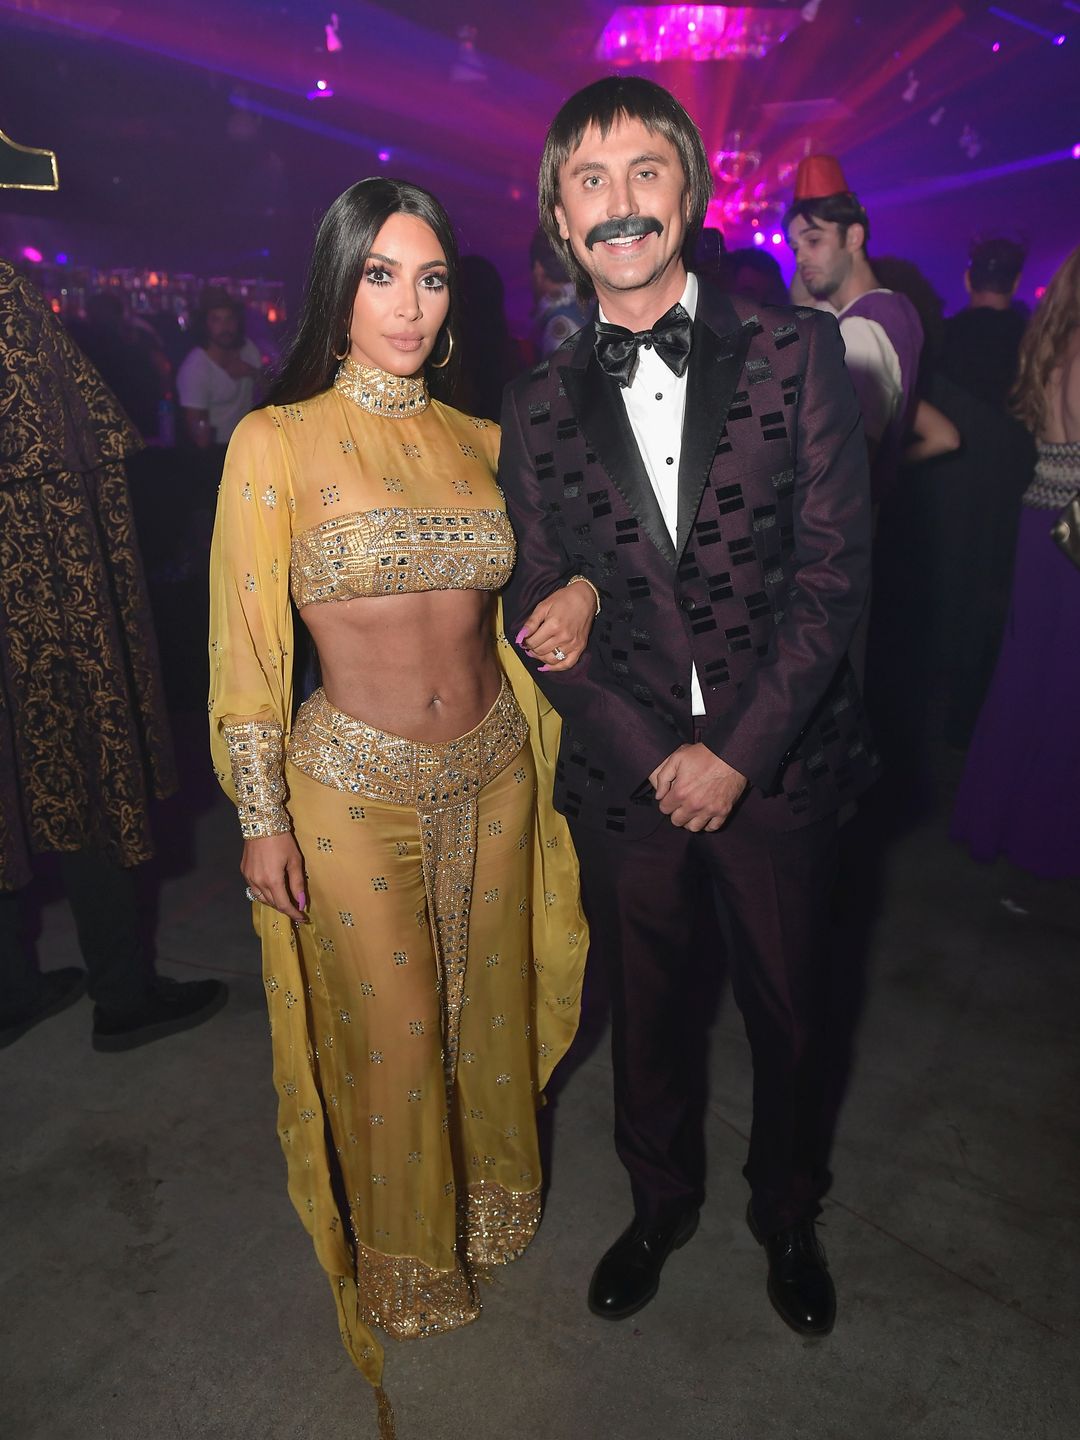 Kim Kardashian and Jonathan Cheban dressed as Sonny and Cher 